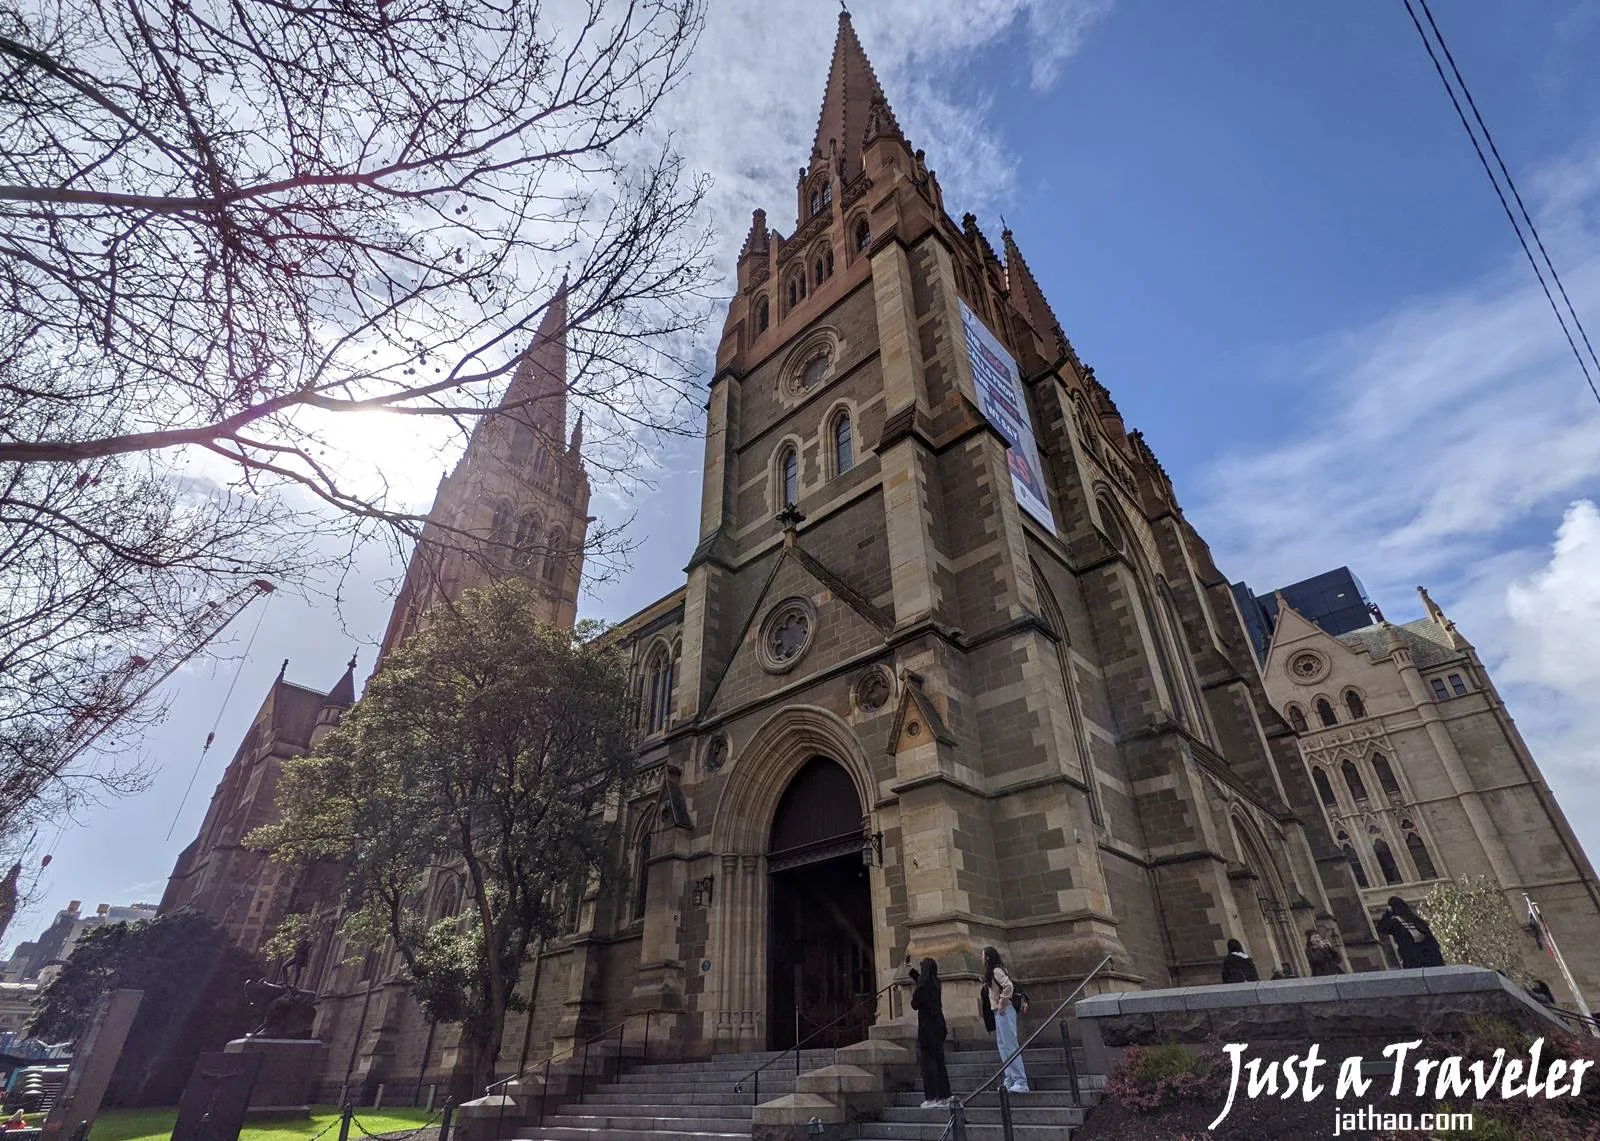 澳洲-墨爾本-市區-墨爾本景點-推薦-聖保羅座堂-St-Paul's-Cathedral-Melbourne-行程-墨爾本旅遊-墨爾本自由行-攻略-遊記-墨爾本一日遊-墨爾本必去景點-Melbourne